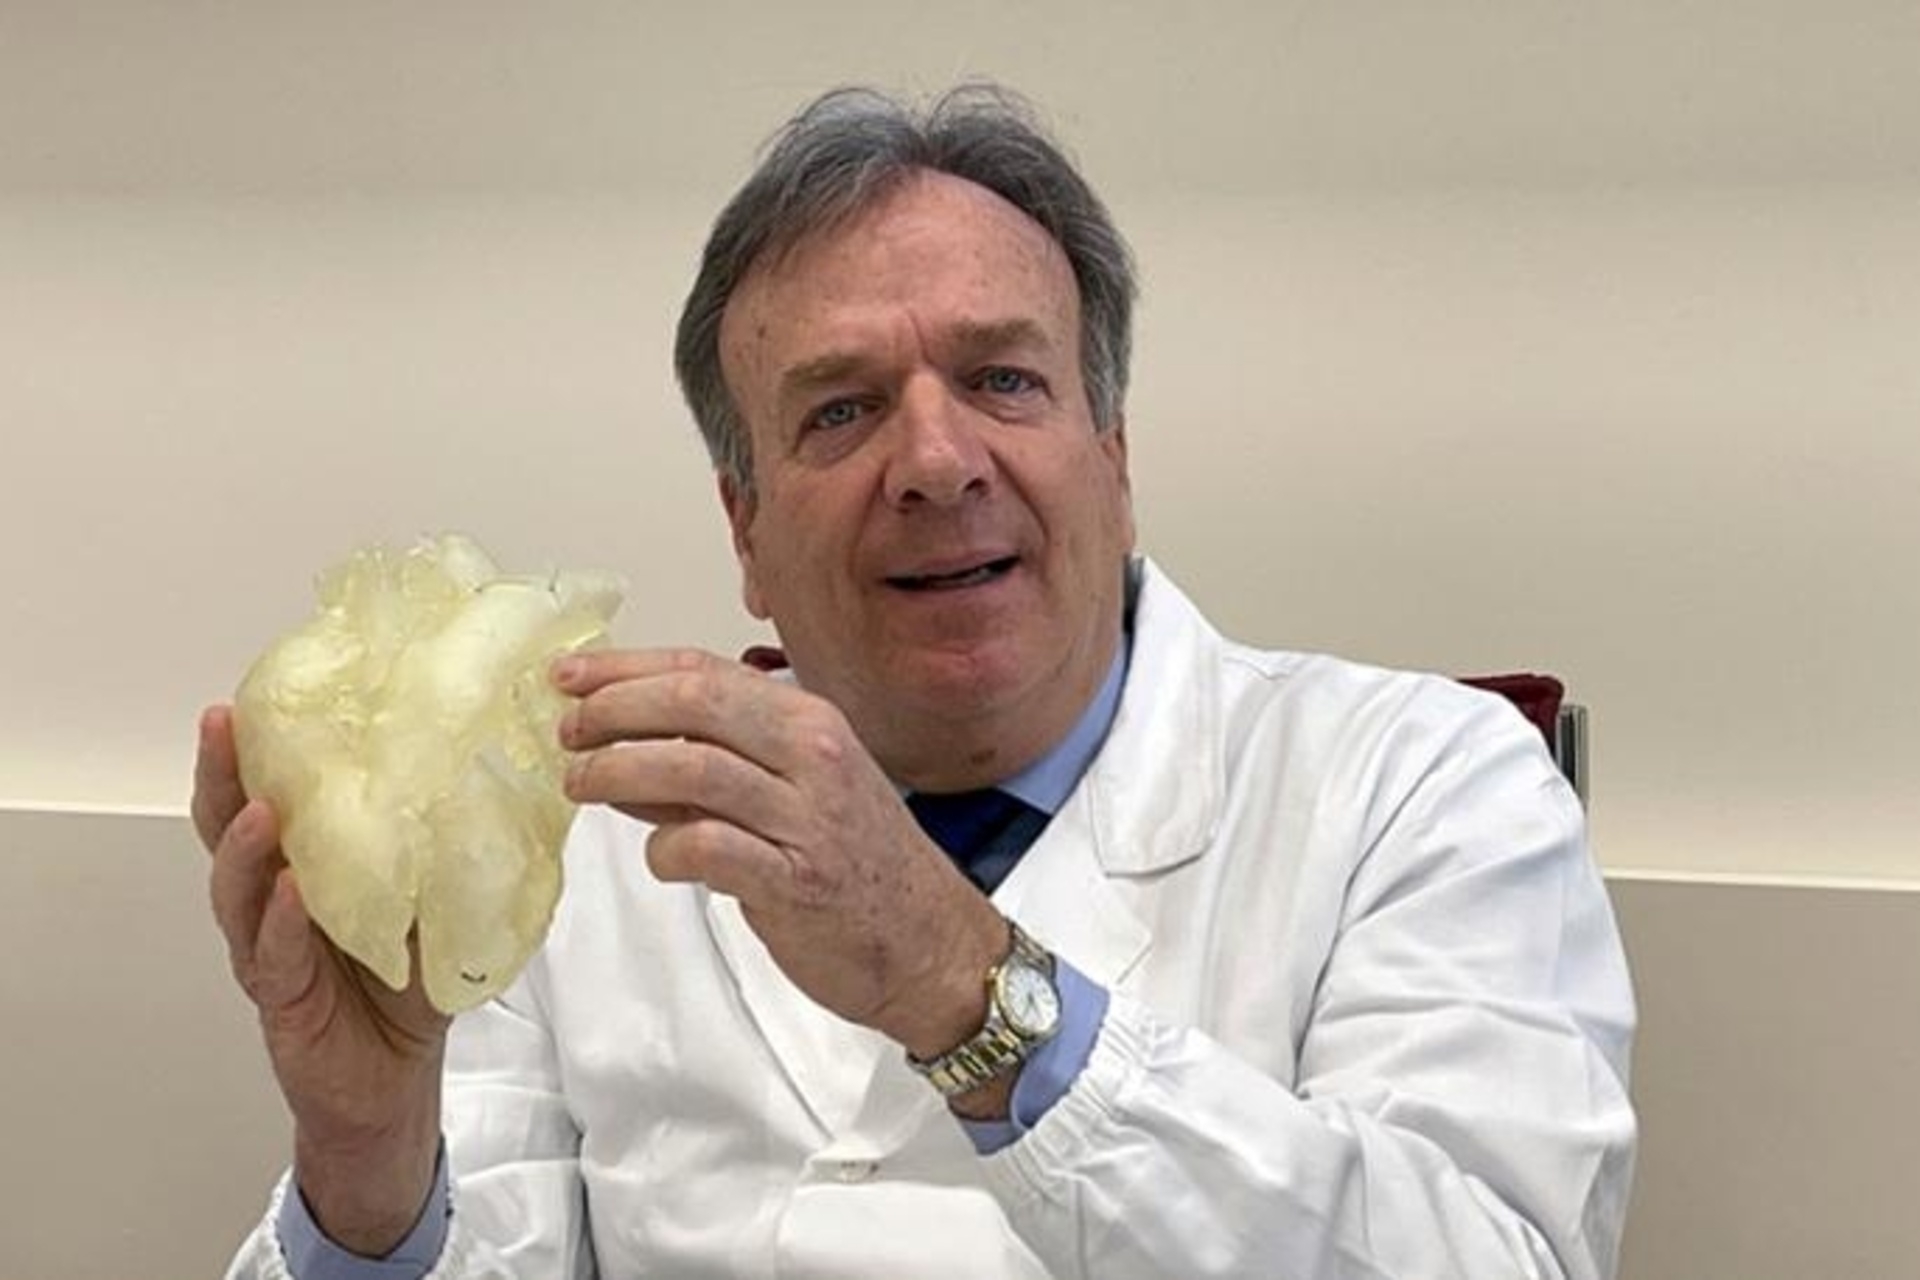 Gino Gerosa: phỏng vấn bác sĩ phẫu thuật từ Đại học Padua, người sẽ điều phối các bác sĩ, kỹ sư, nhà sinh học và chuyên gia vật liệu với ngân sách 50 triệu euro để tạo ra trái tim nhân tạo đầu tiên của Ý